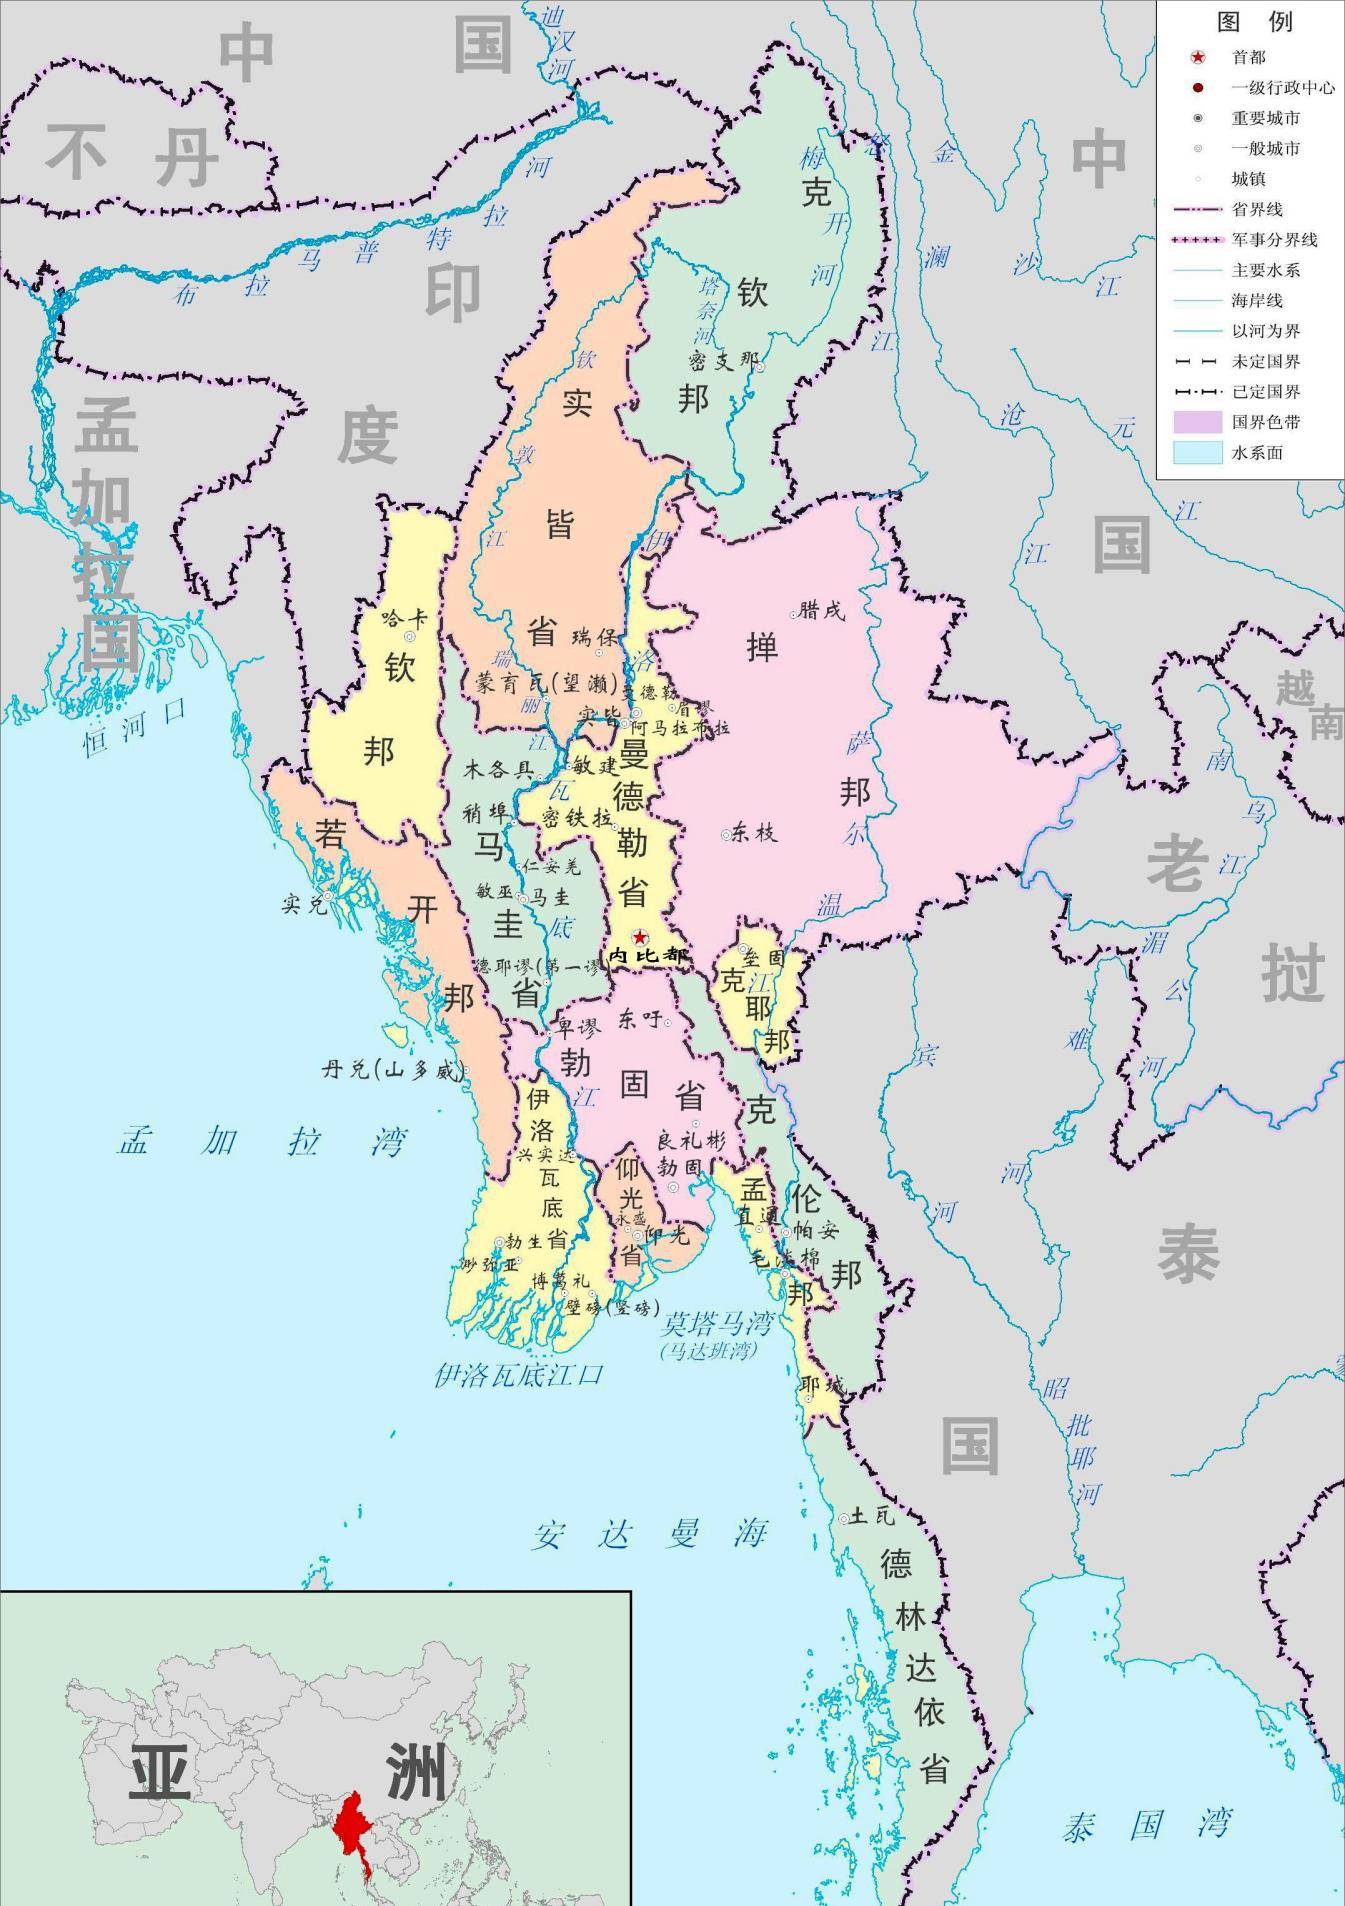 血战东南亚:日不落帝国为何会在自己的殖民地一触即溃?